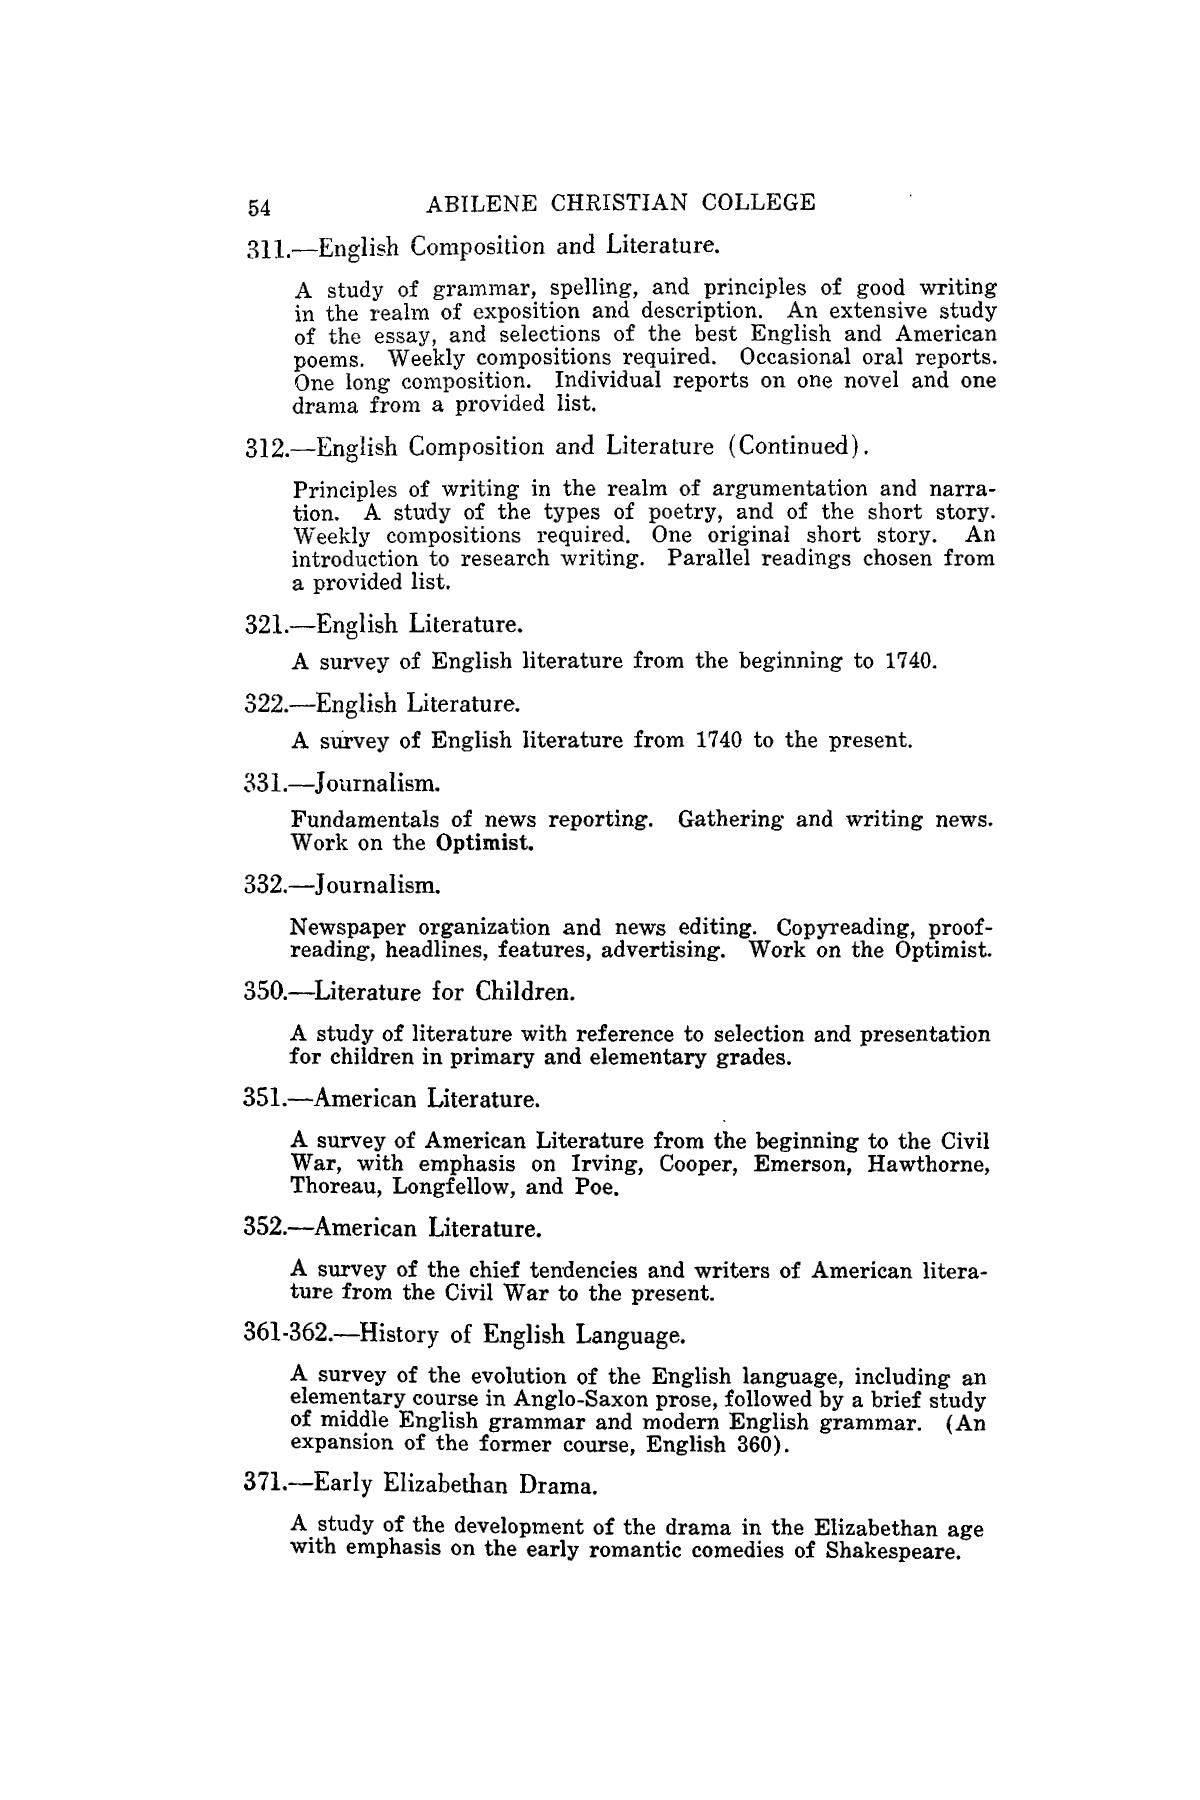 Catalog of Abilene Christian College, 1941-1942
                                                
                                                    54
                                                